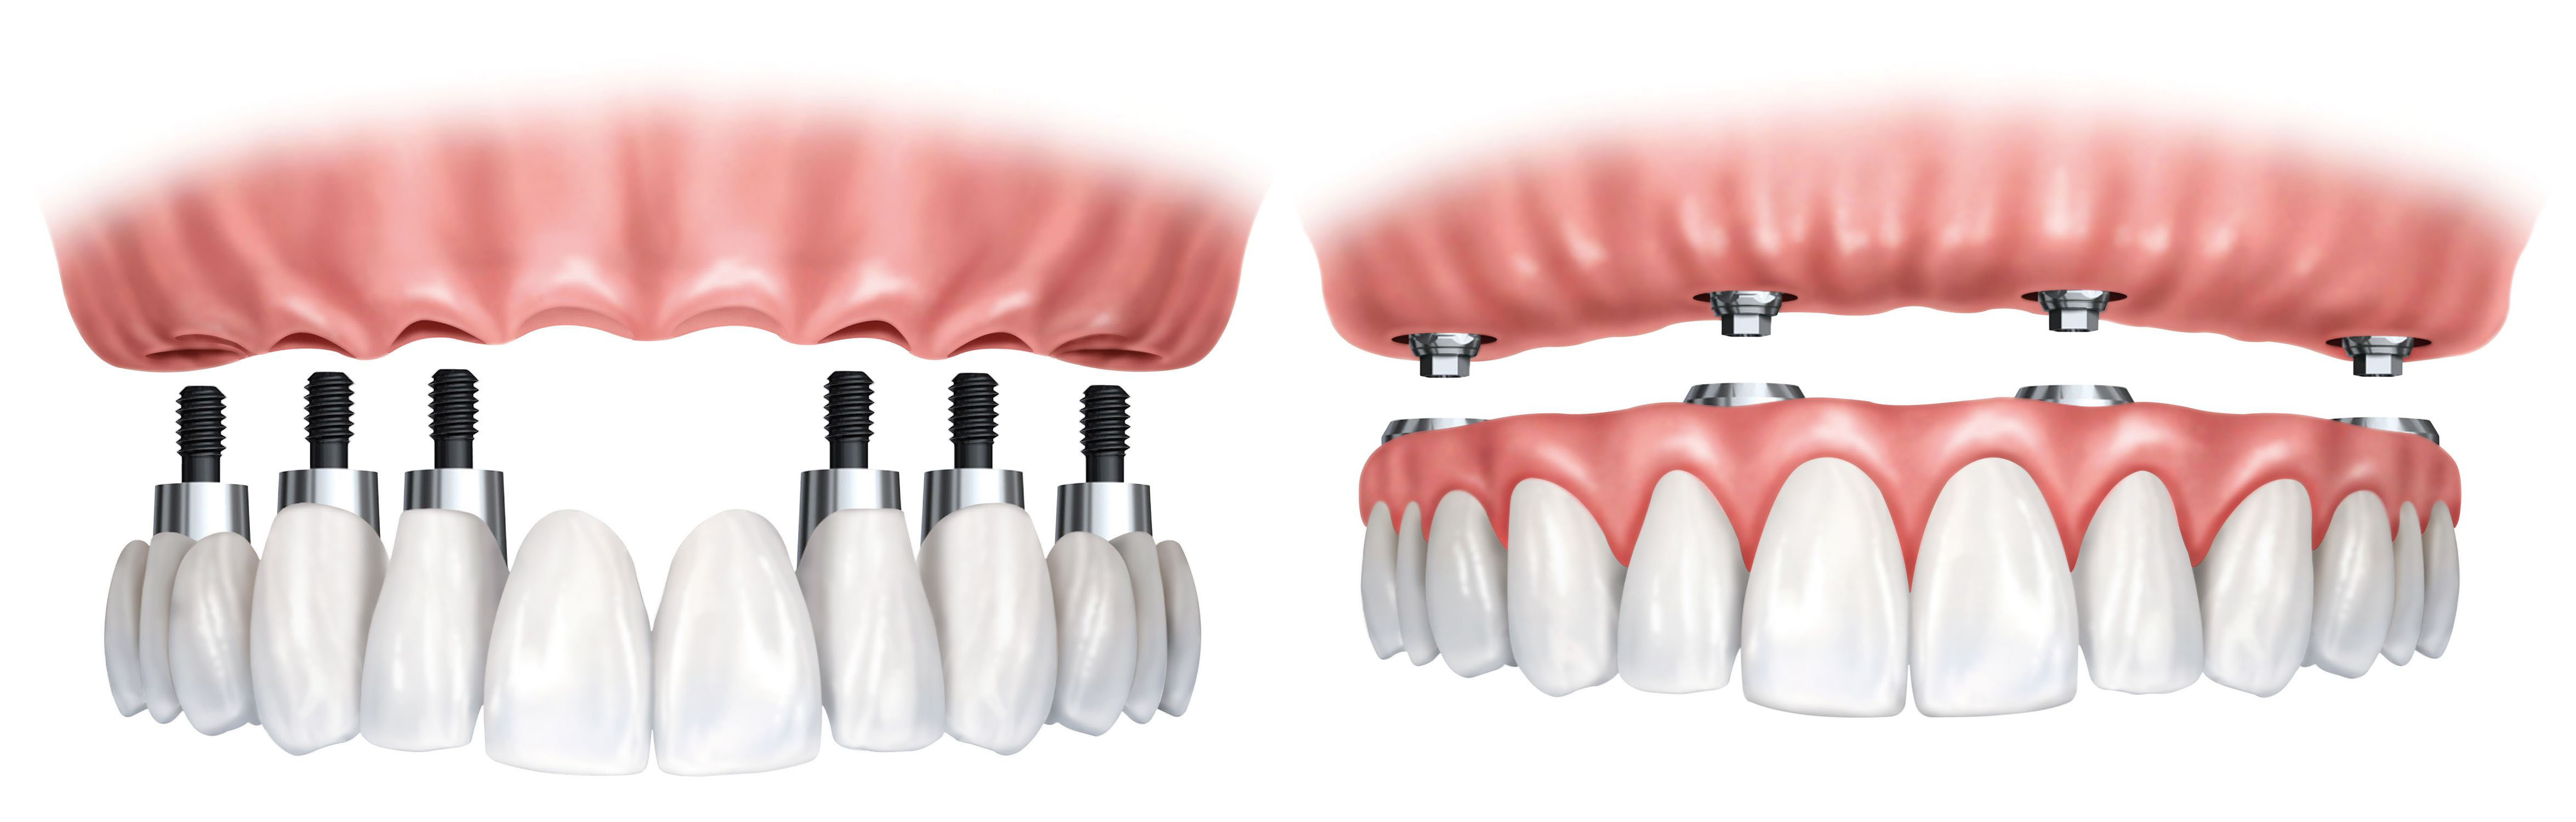 Имплантация зубов all on 6. Имплантация зубов на 6 имплантах верхней челюсти. Имплантация челюсти на 4 имплантах. Имплантация челюсти на 6 имплантах. Имплантация all-on-6 (имплантация на 6 имплантах).